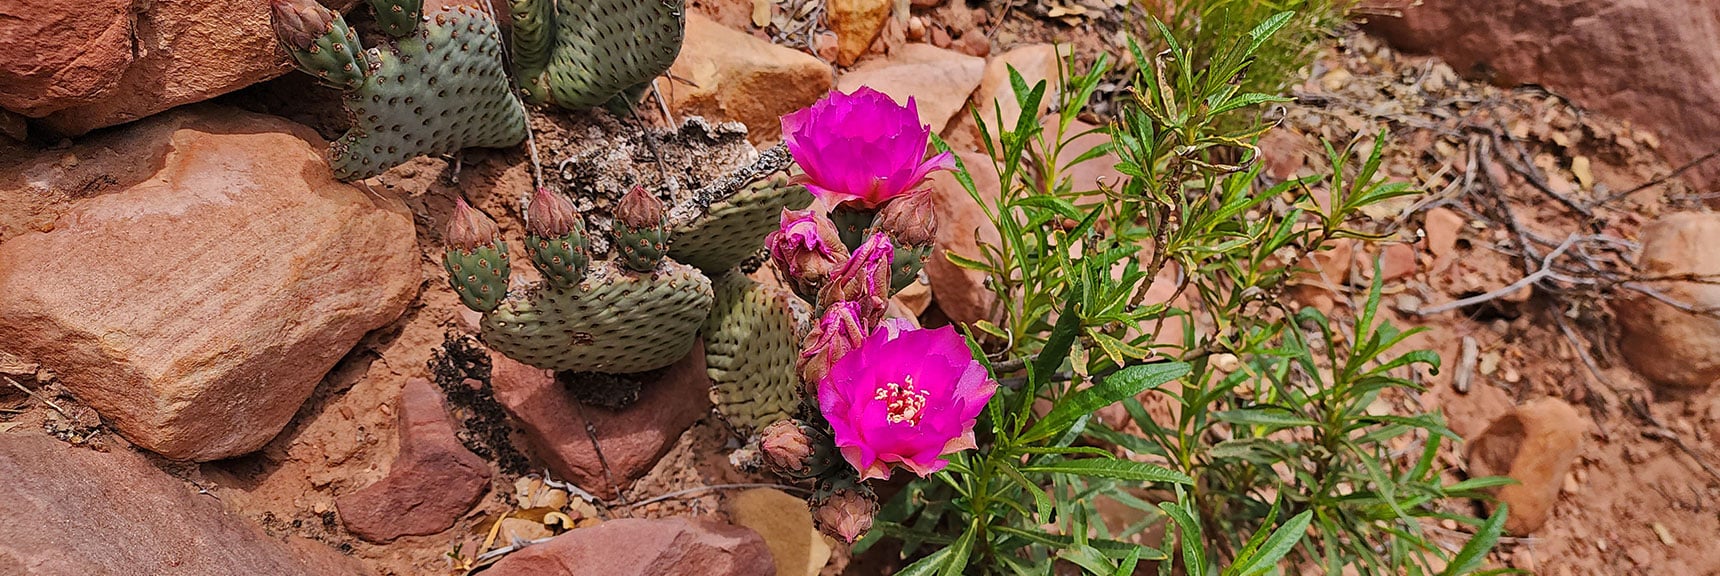 Beavertail Cactus | Juniper Canyon | Red Rock Canyon National Conservation Area, Nevada | David Smith | LasVegasAreaTrails.com